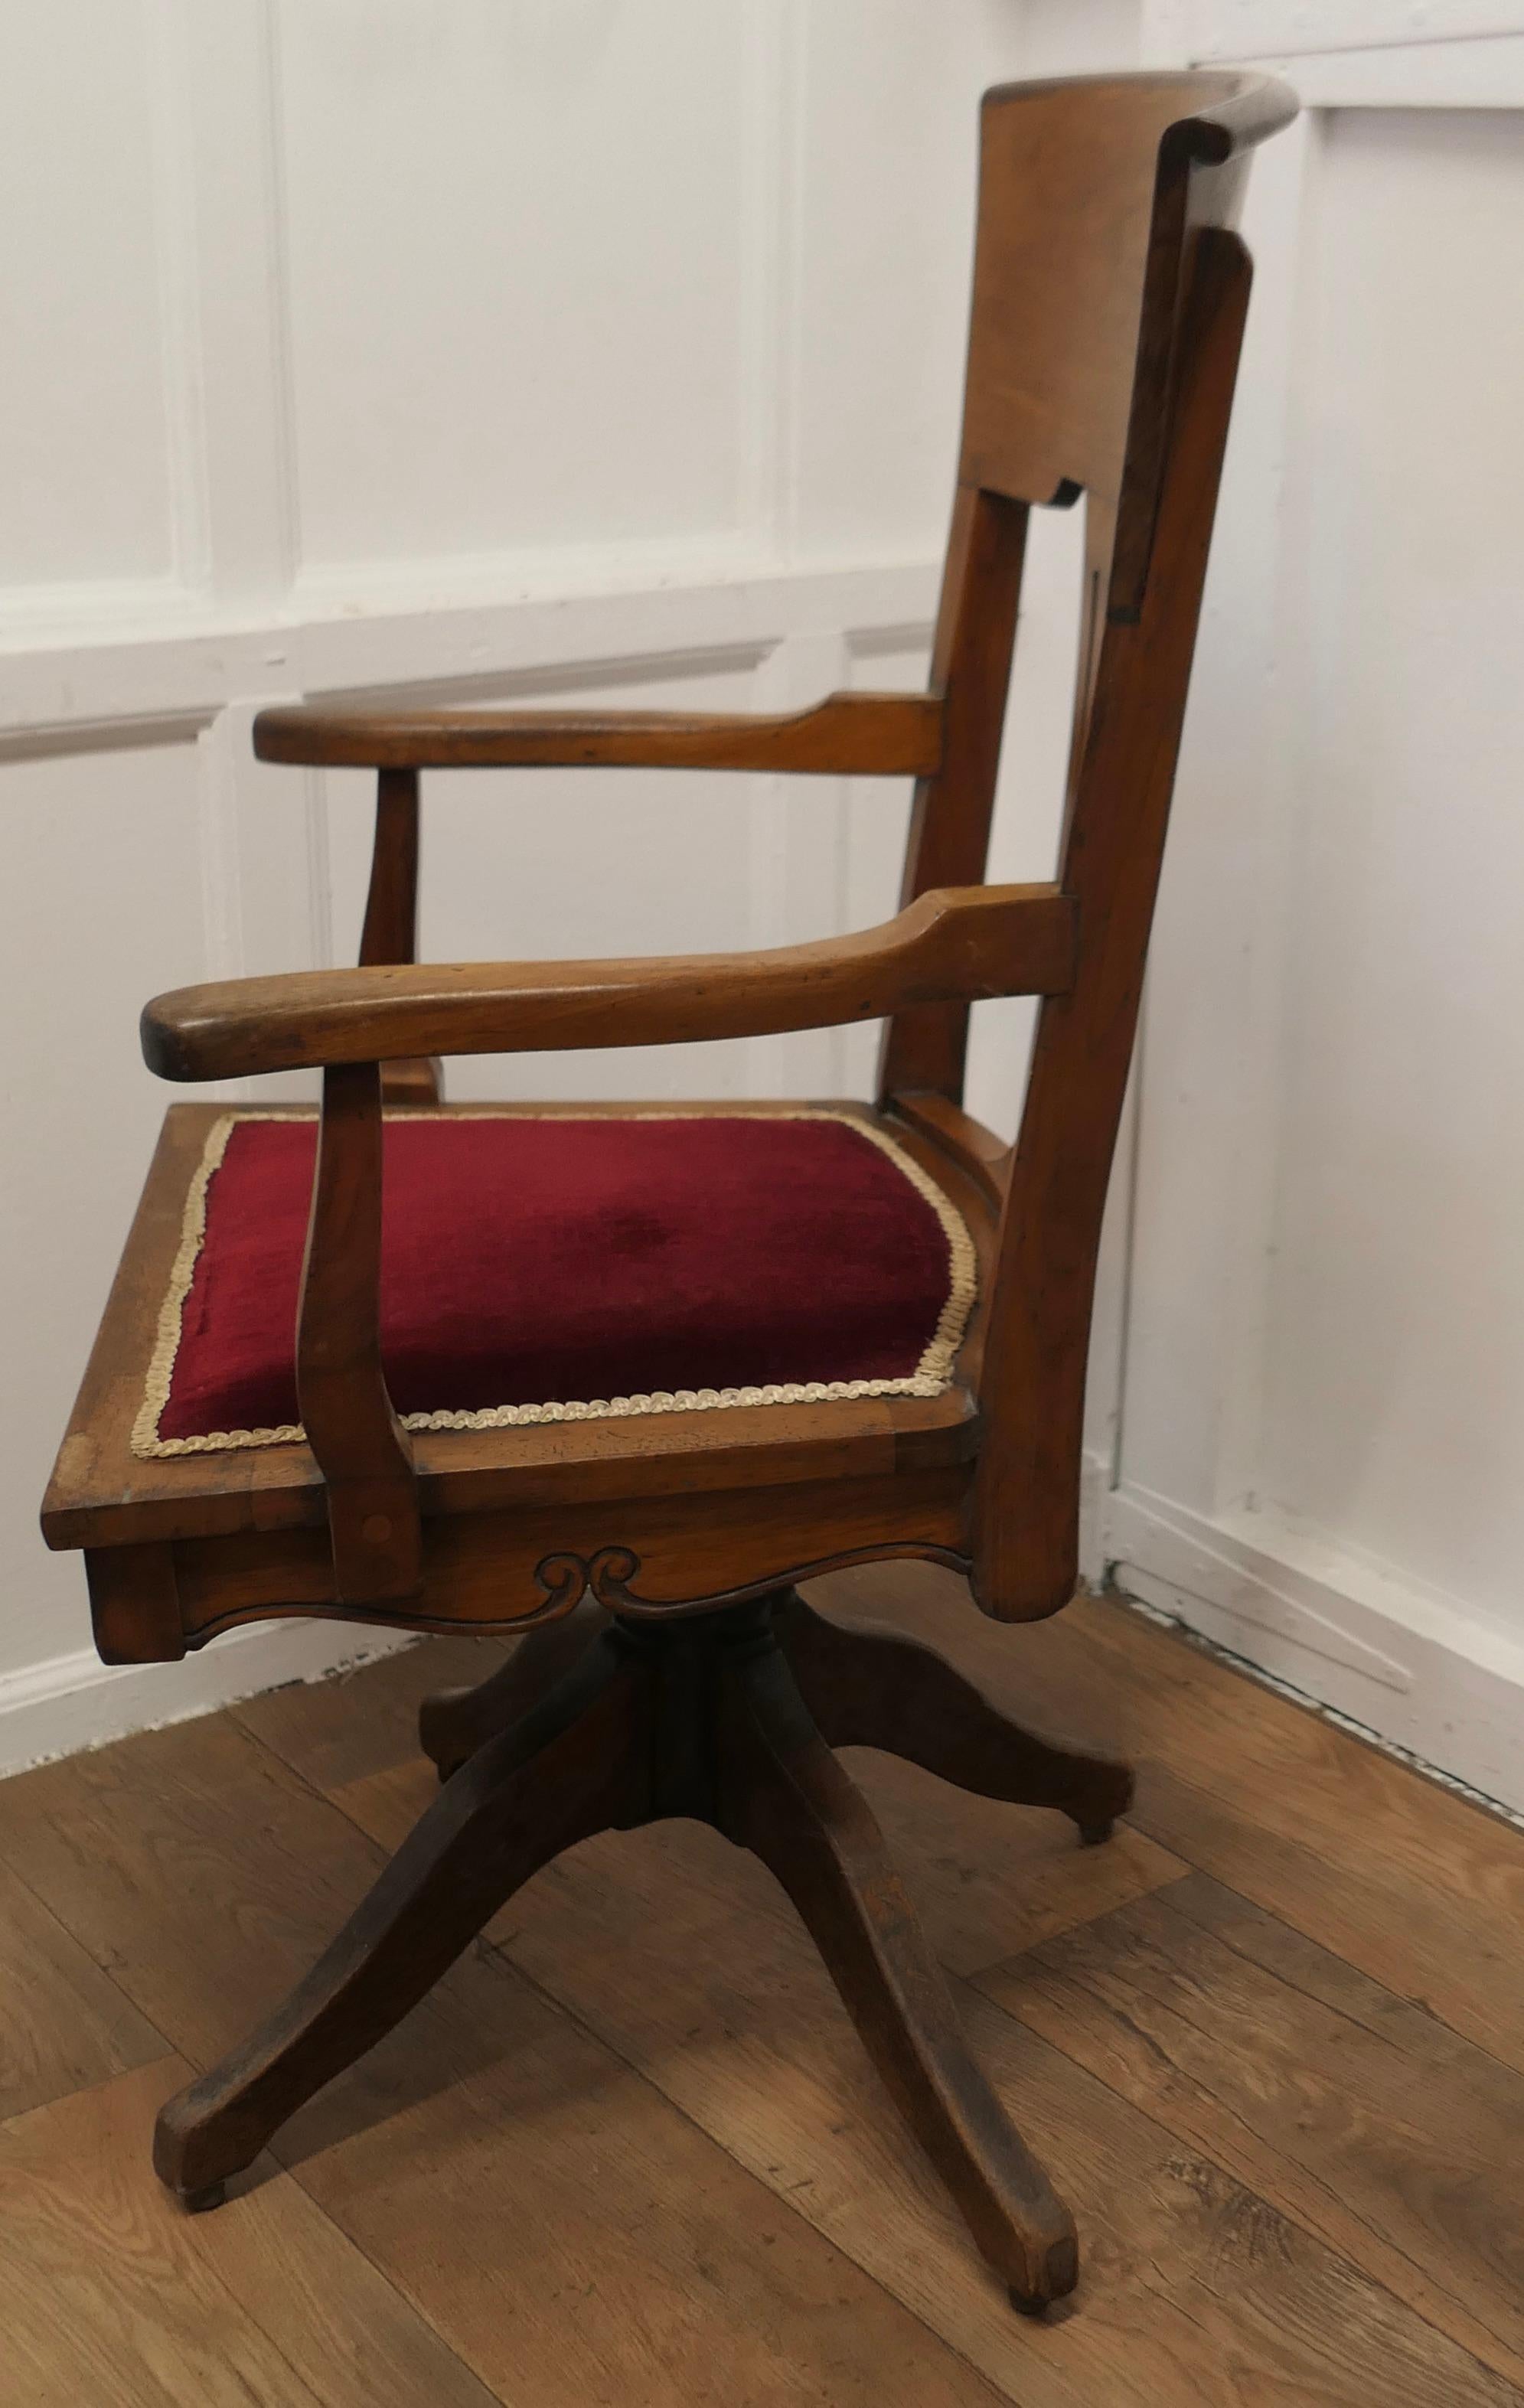 Début du 20ème siècle Chaise de bureau en noyer de style Arts and Crafts de l'époque édouardienne      en vente